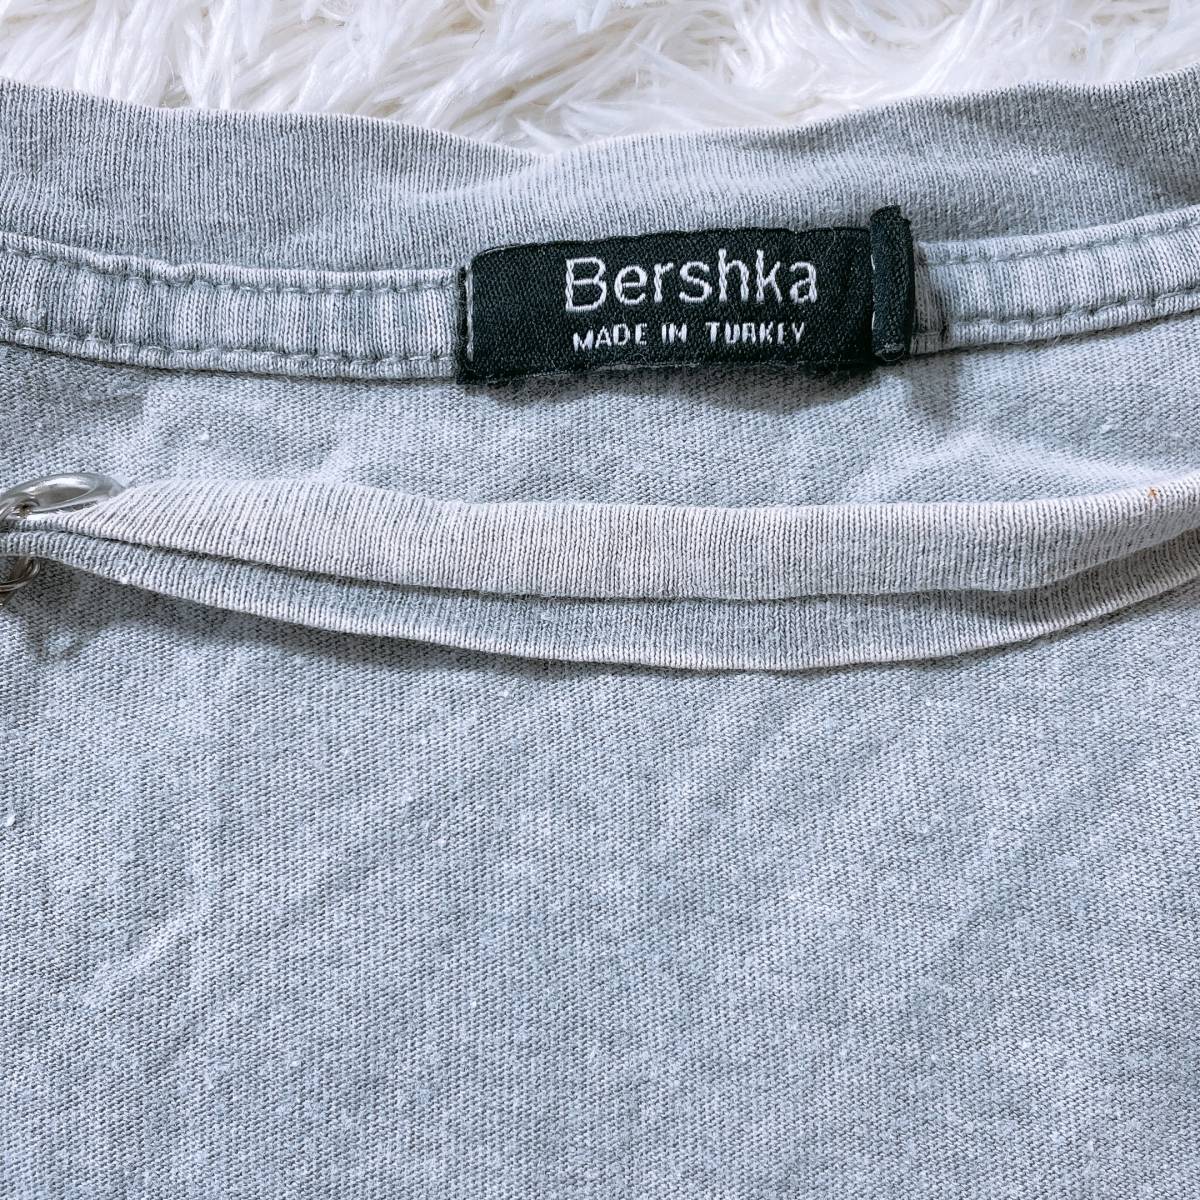 【21755】 訳あり品 Bershka ベルシュカ Tシャツ グレー L ダメージ チェーン 鎖 かっこいい パンク 個性的 レディース 女性用